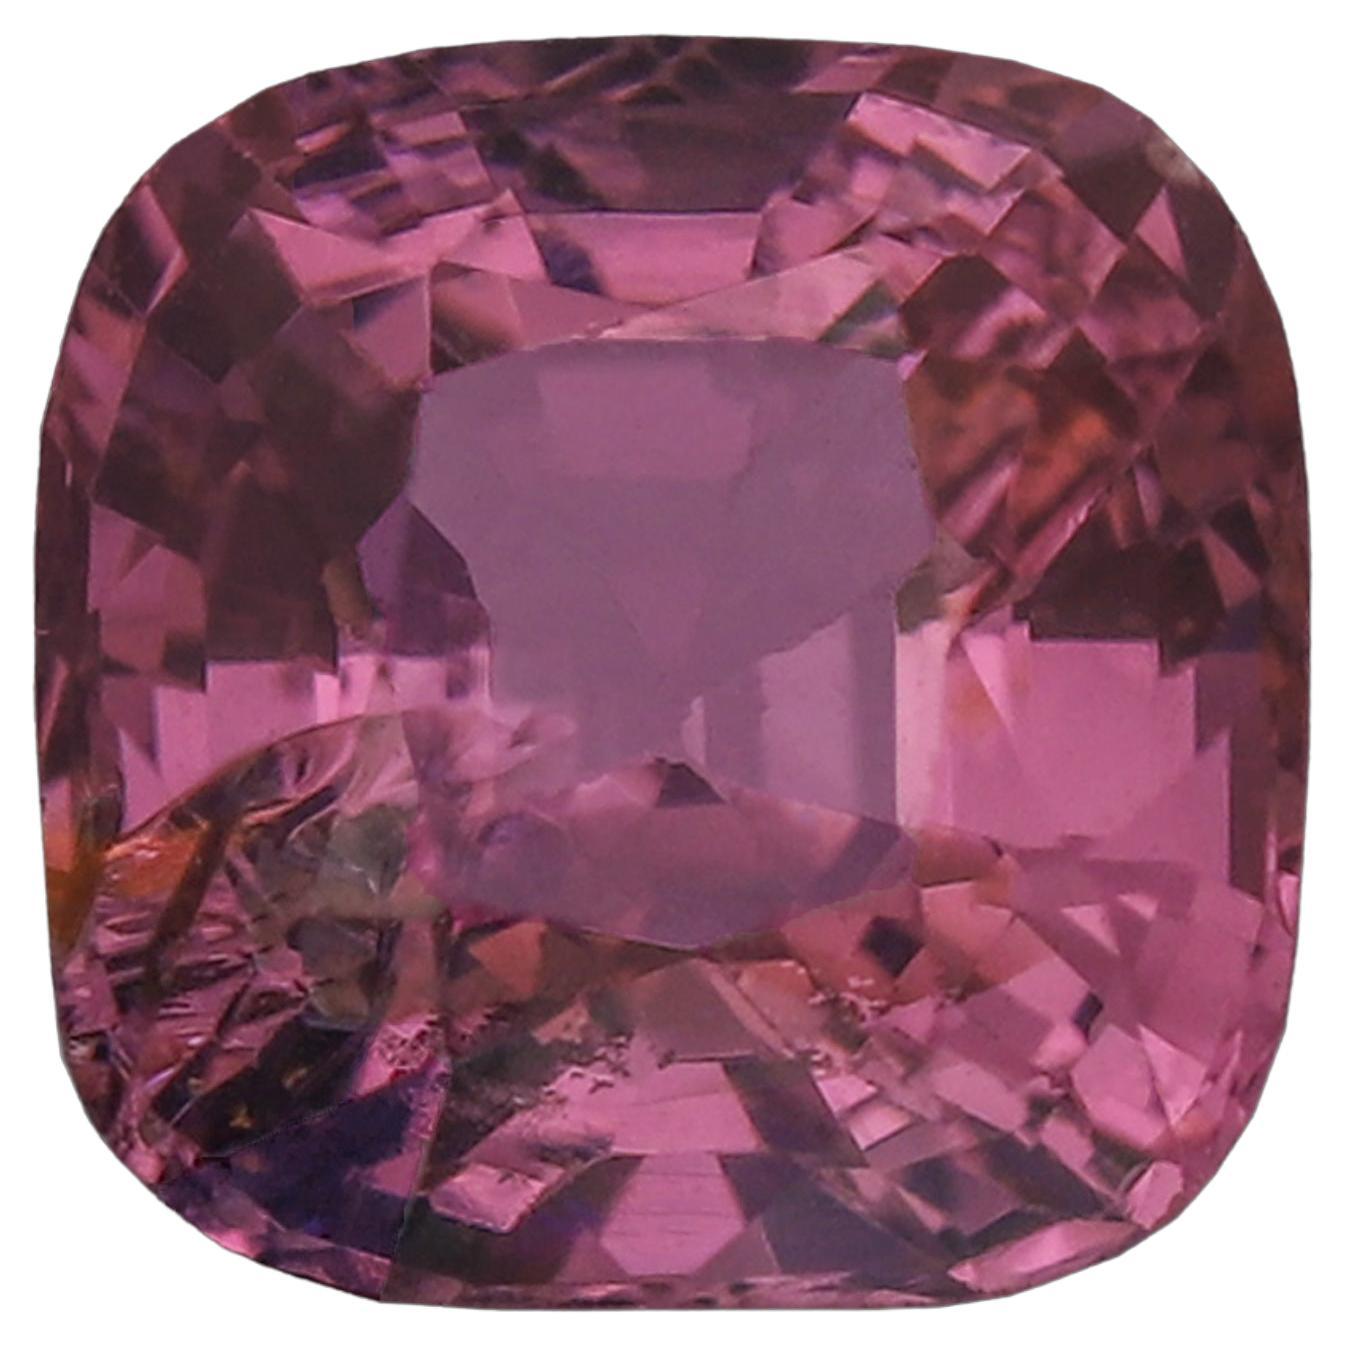 Bijoux en spinelle rose vif, pierre précieuse naturelle de 1,24 carat, pierre précieuse spinelle